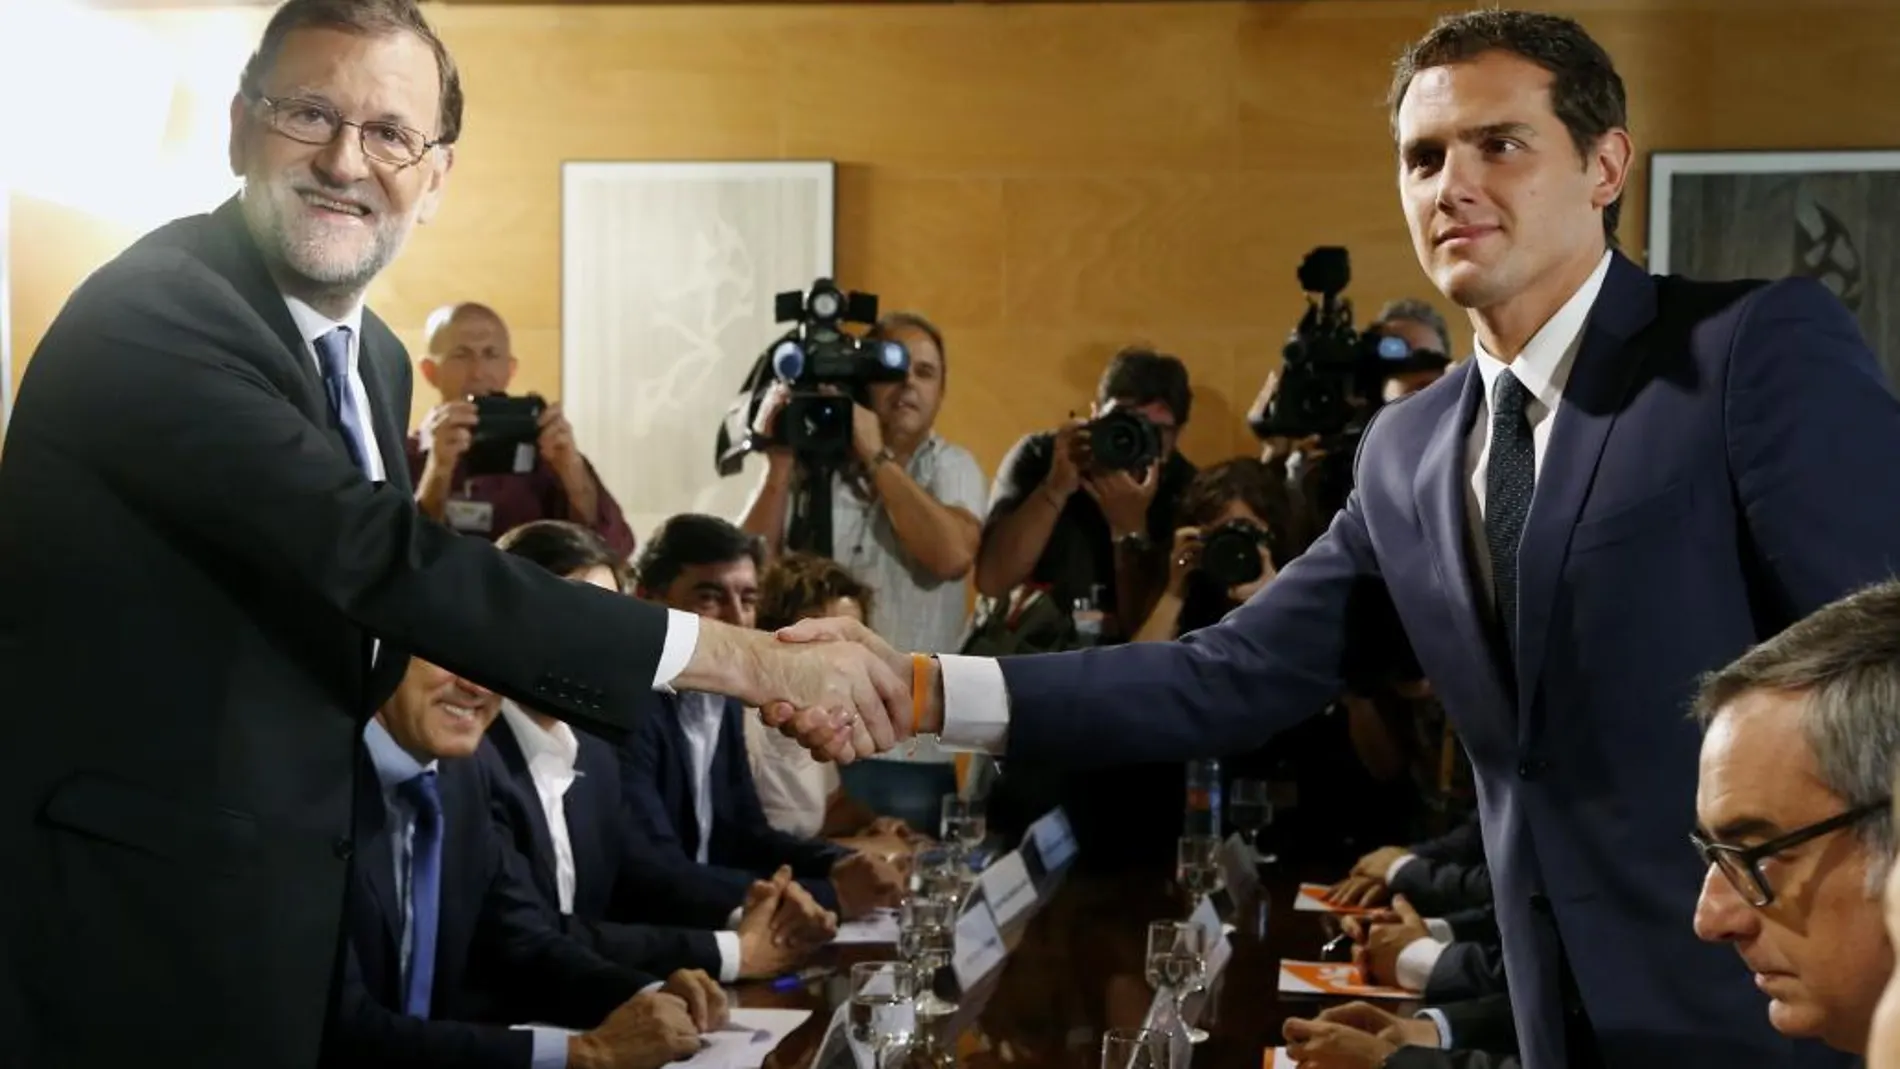 Mariano Rajoy, iz., y el líder de Ciudadanos, Albert Rivera,se estrechan la mano durante la reunión de sus respectivas delegaciones